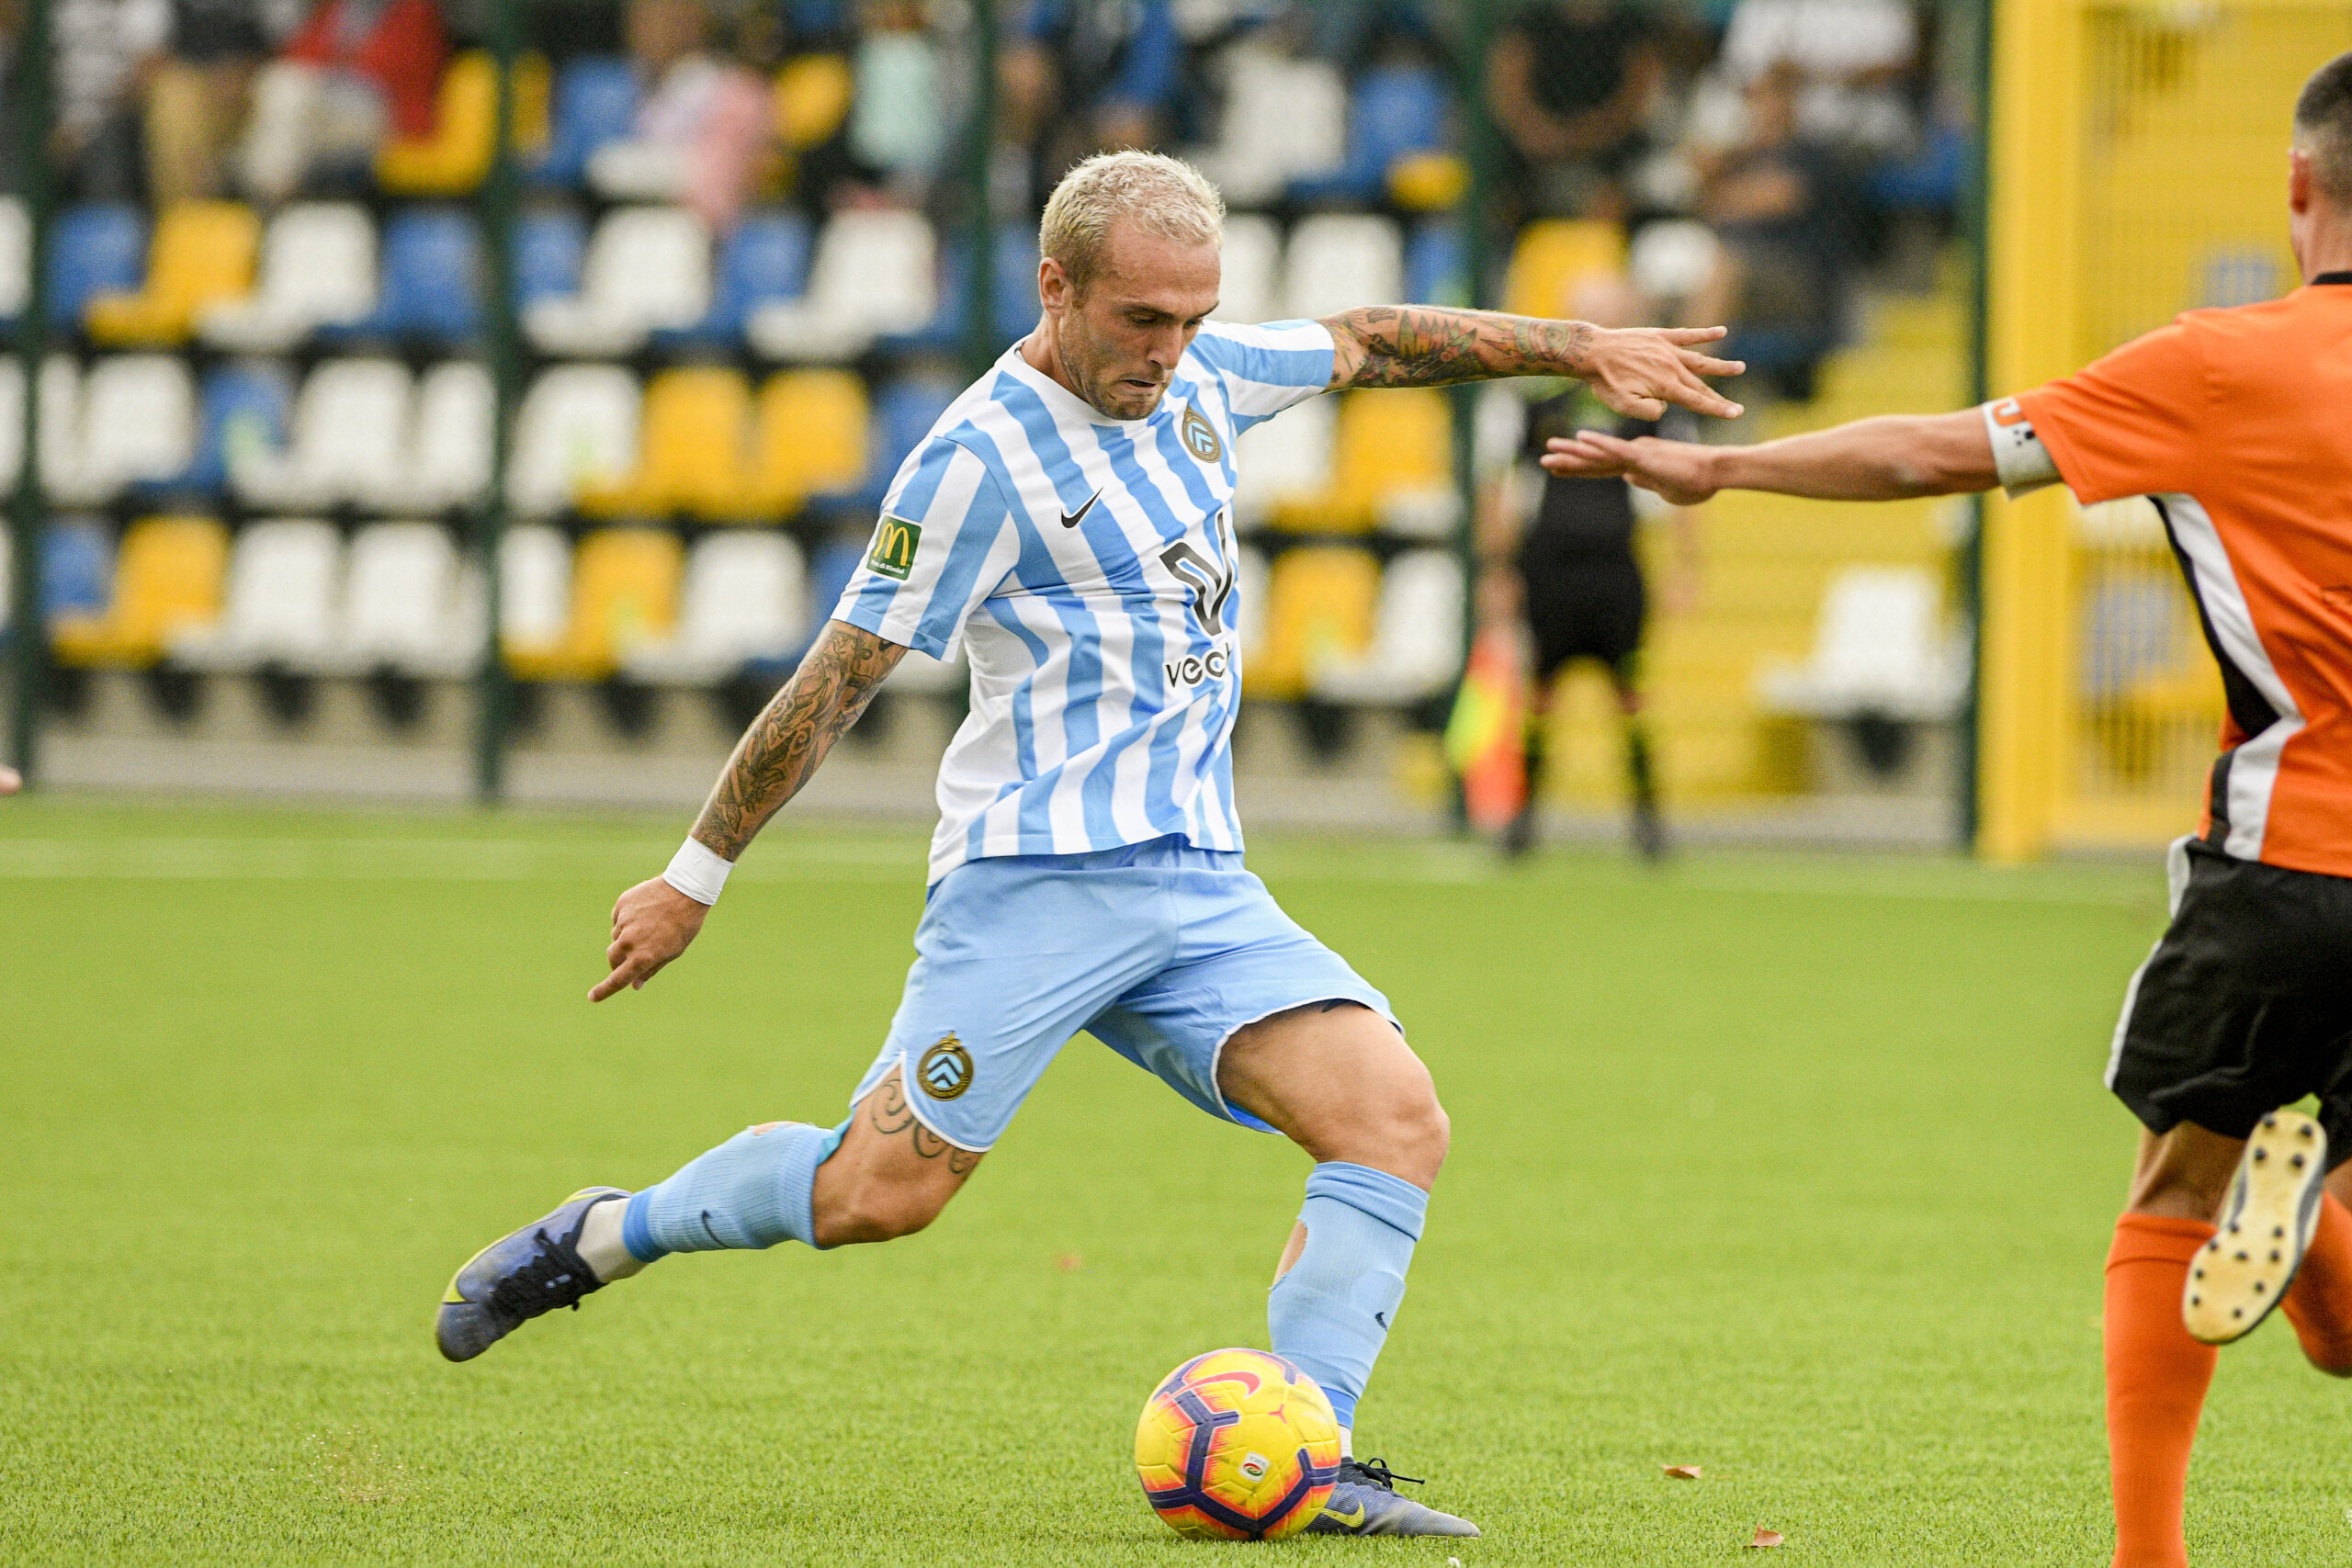 Calcio, il ruggito di Nicholas Santoni: “Il Victor San Marino è ambizioso. Sempre bello e stimolante lottare per le prime posizioni”